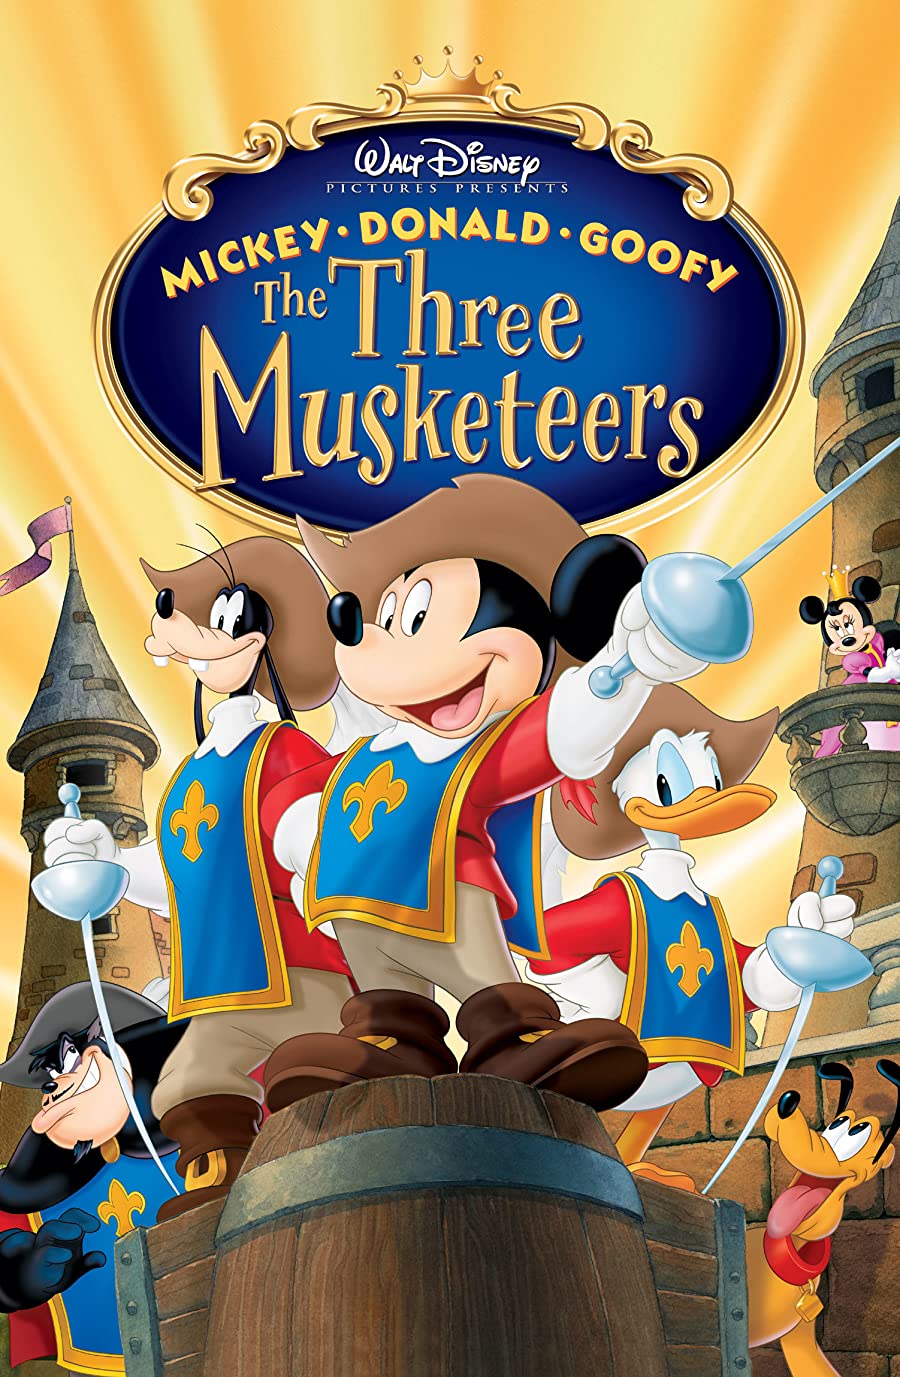 دانلود انیمیشن Mickey, Donald, Goofy: The Three Musketeers 2004 میکی، دونالد، گوفی: سه تفنگدار با دوبله فارسی